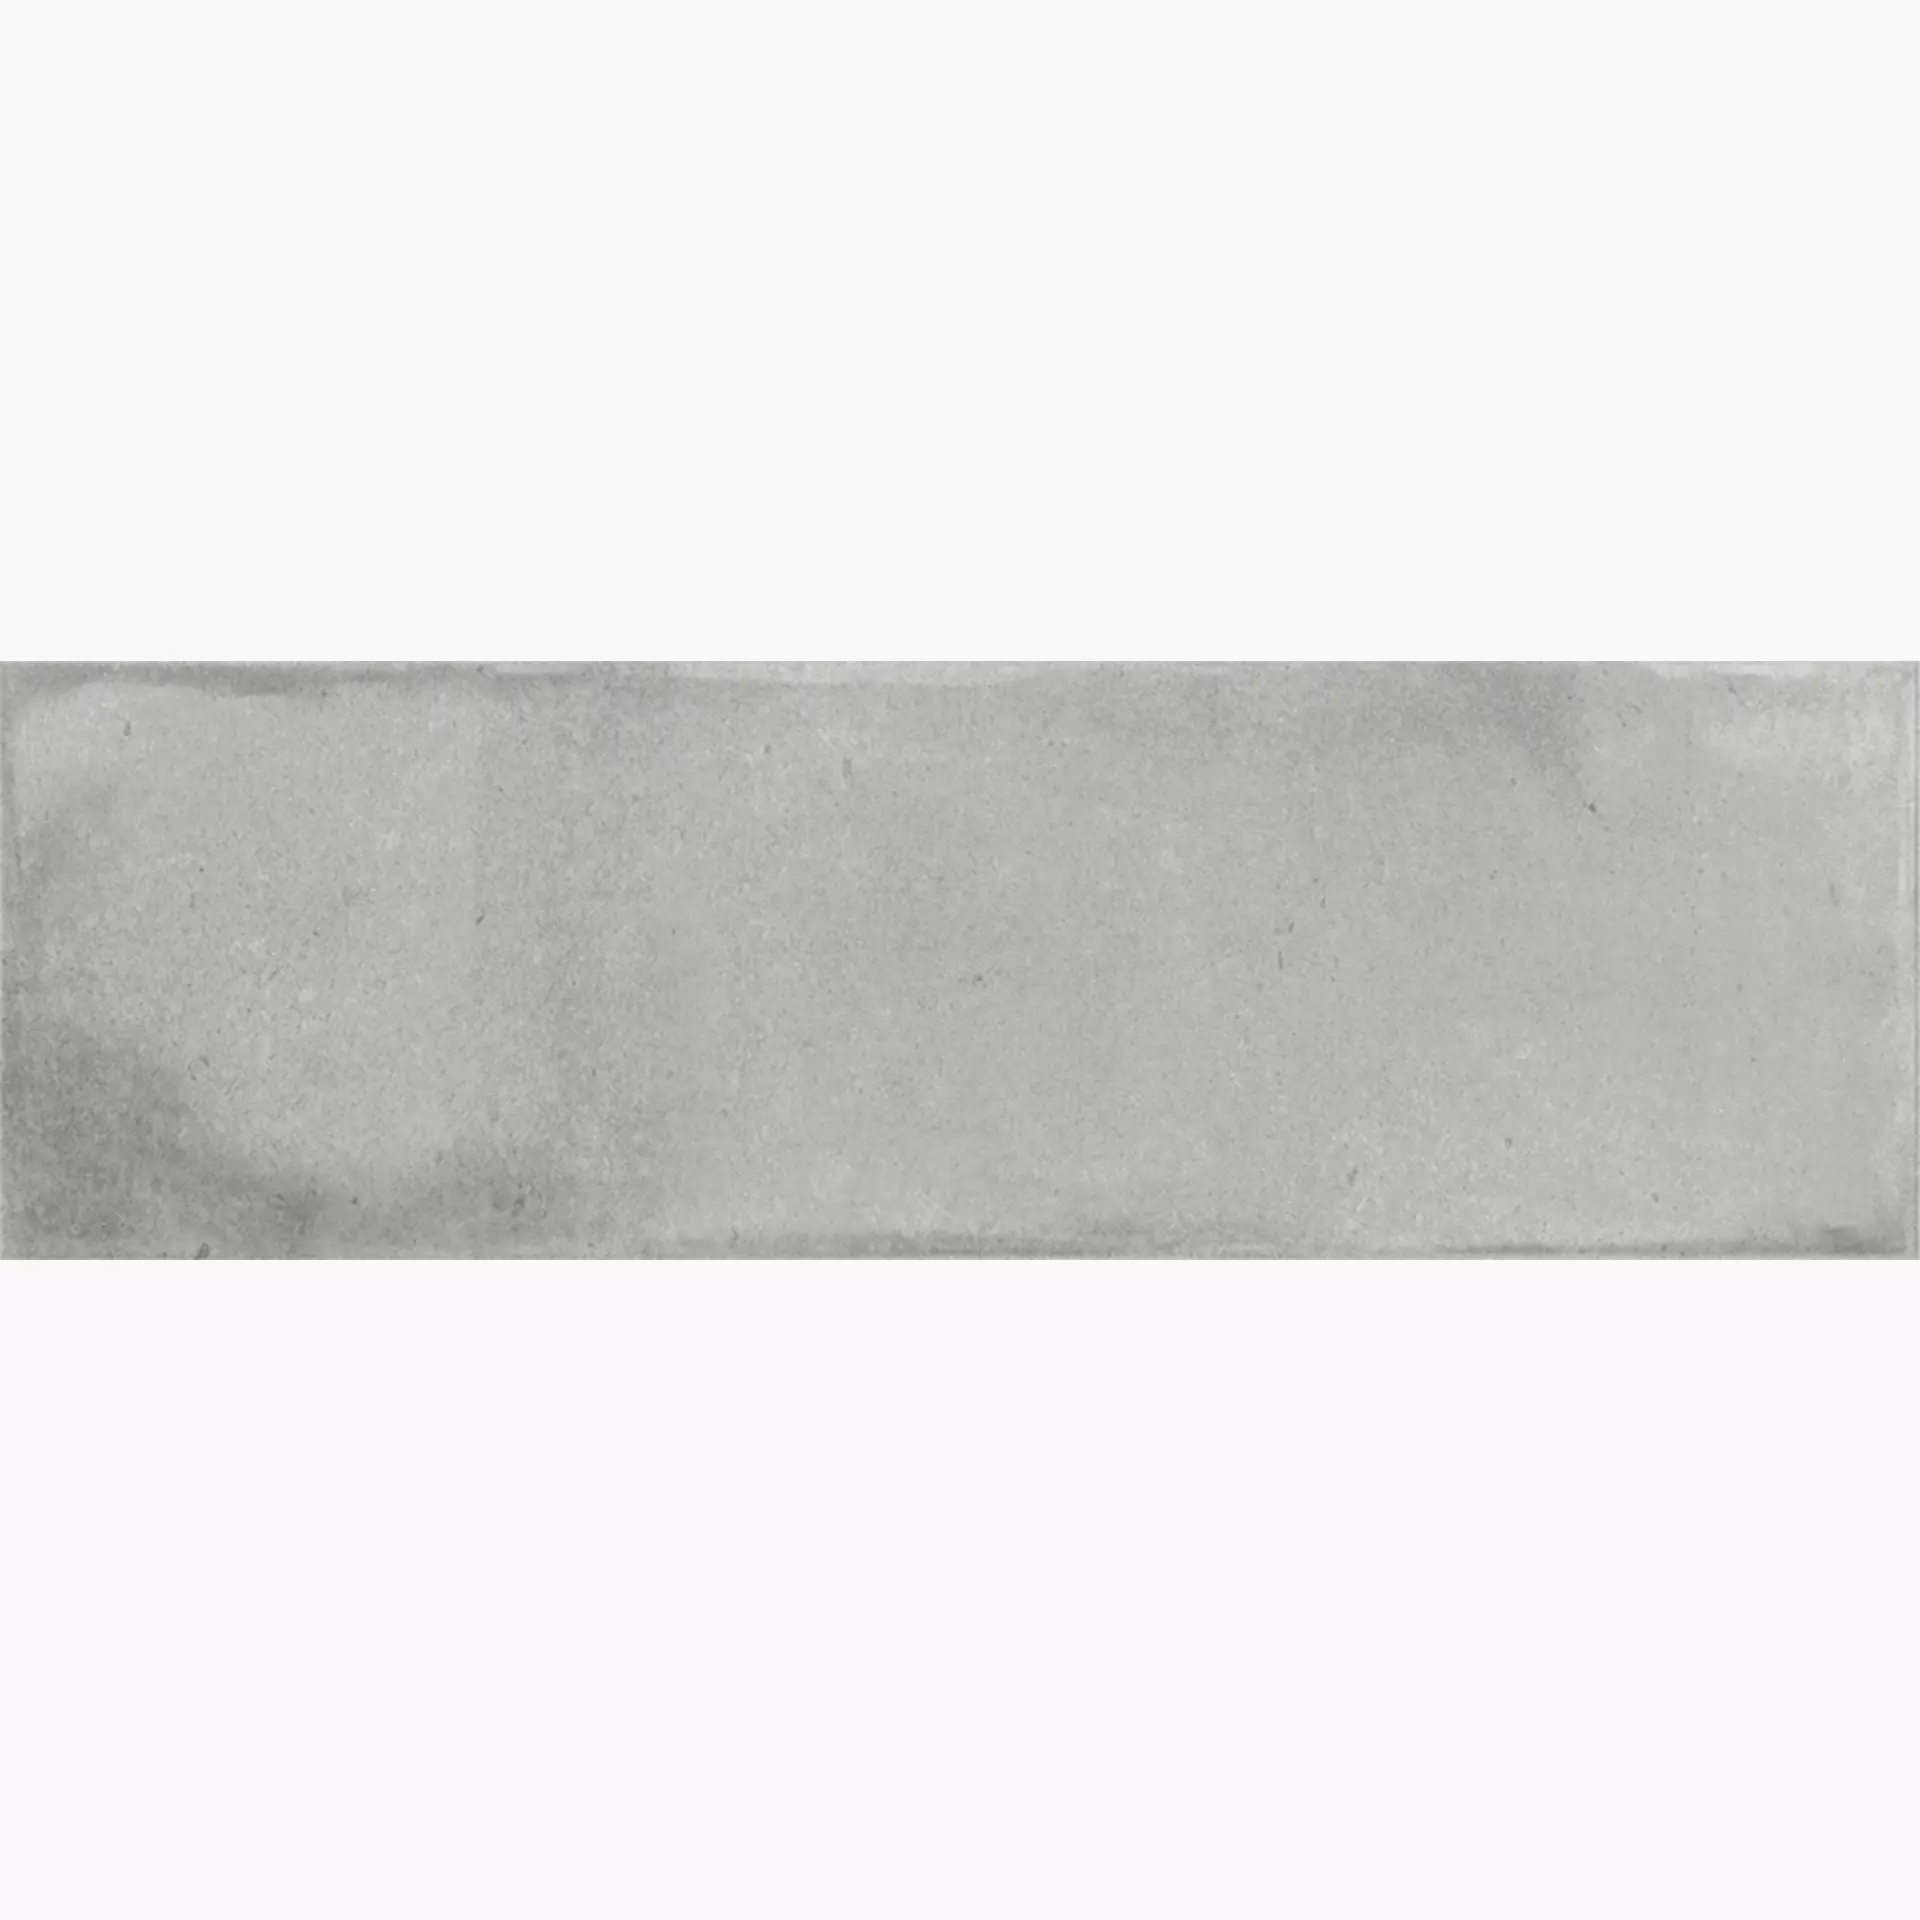 La Fabbrica AvA Small Grey Bright 180033 5,1x16,1cm 9mm